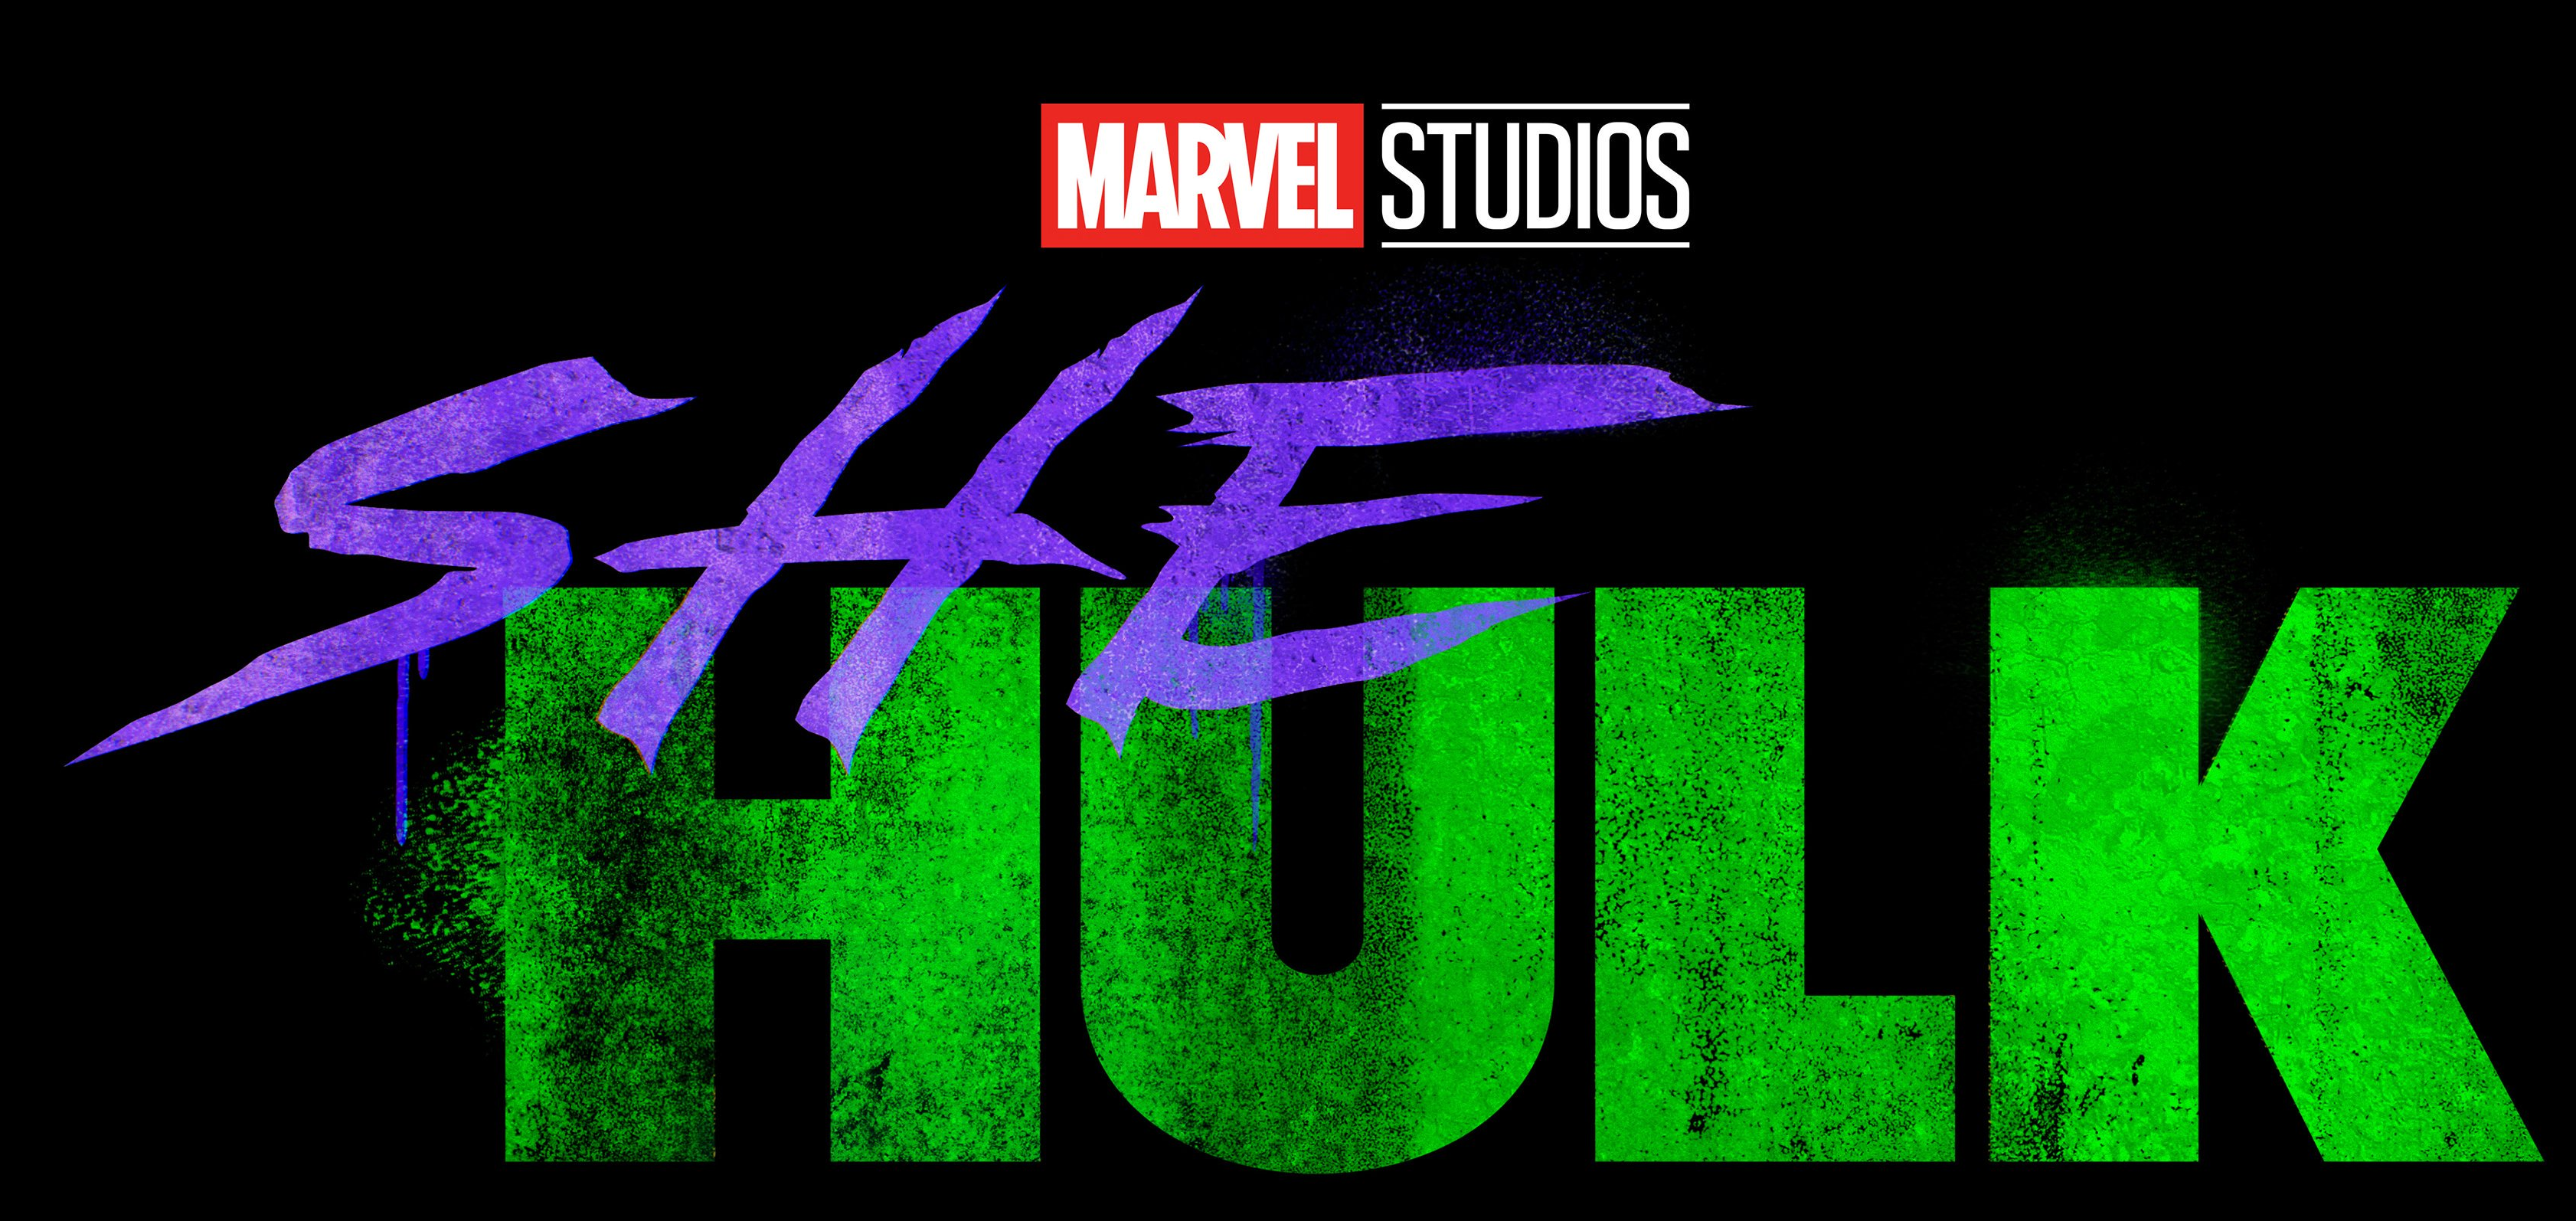 She Hulk tv series